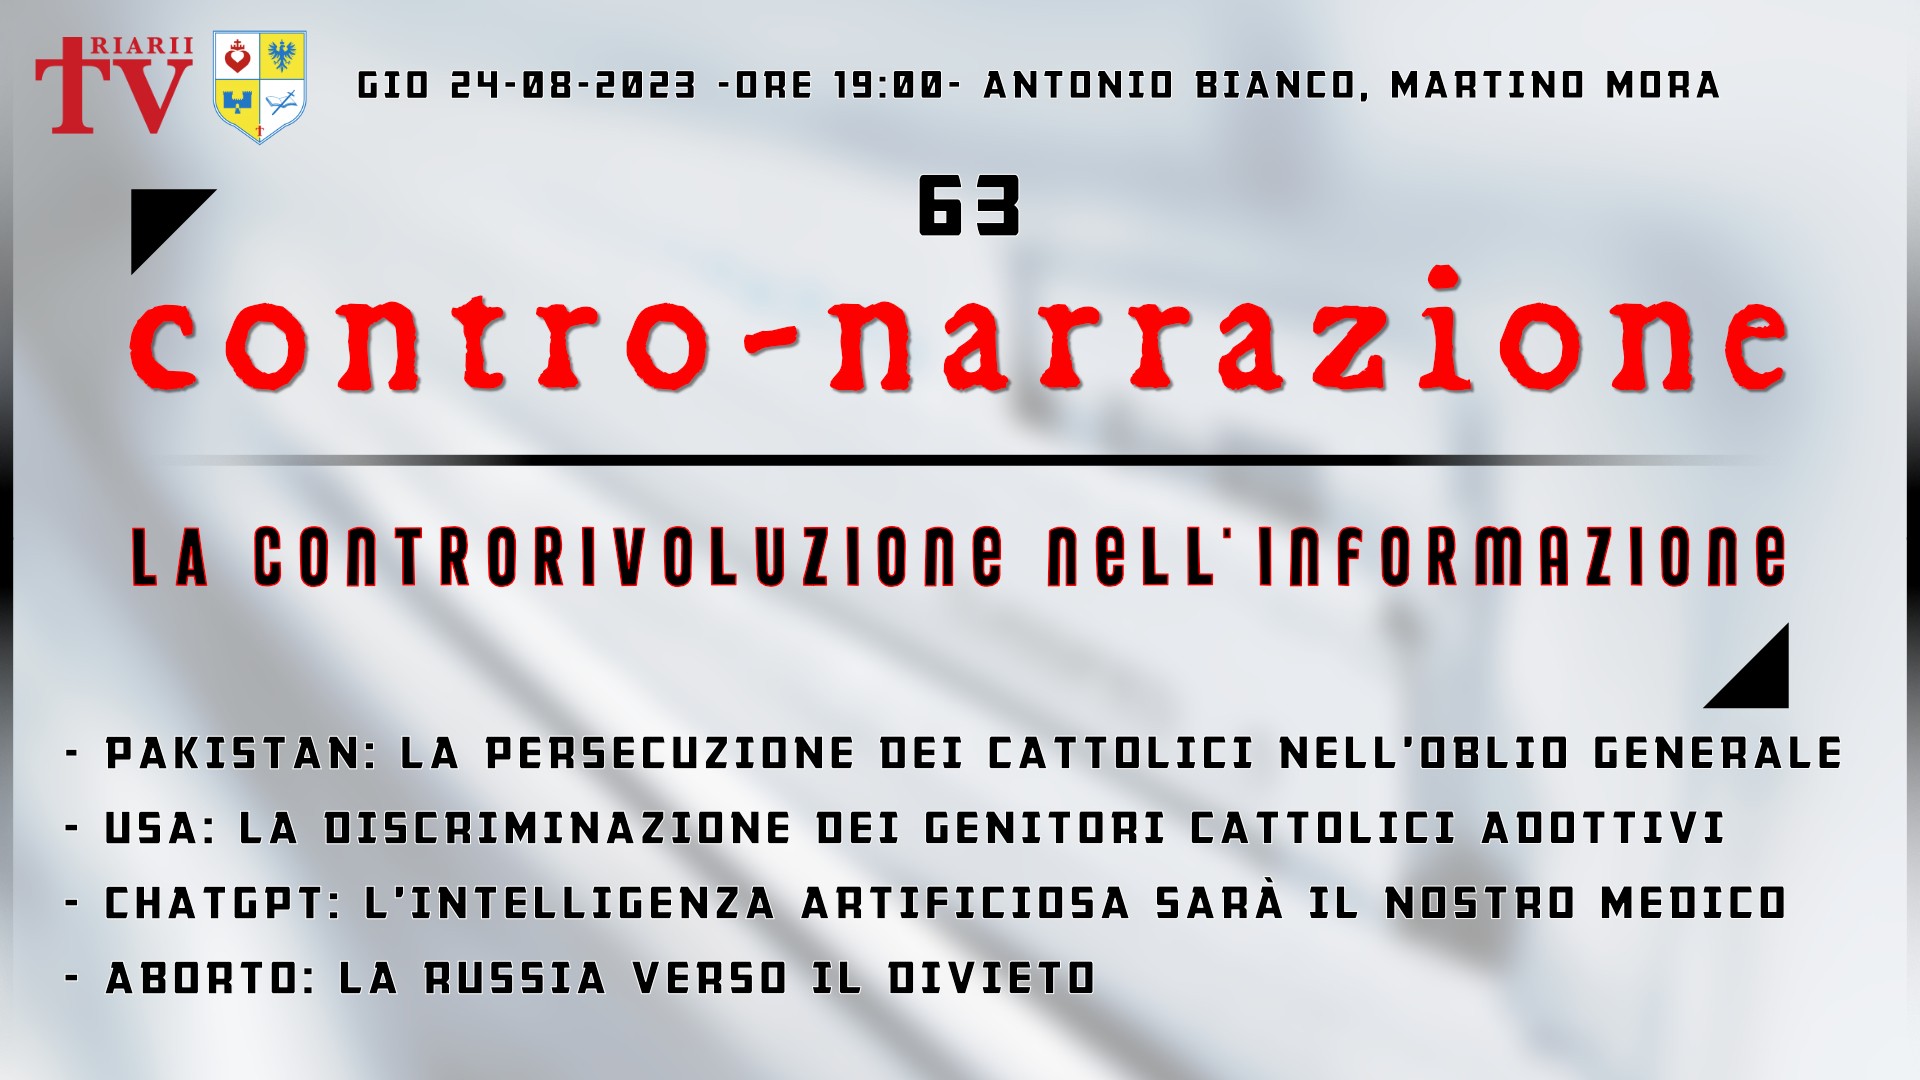 CONTRO-NARRAZIONE NR.63 - GIOV 24 AGOSTO 2023 - Antonio Bianco, Martino Mora